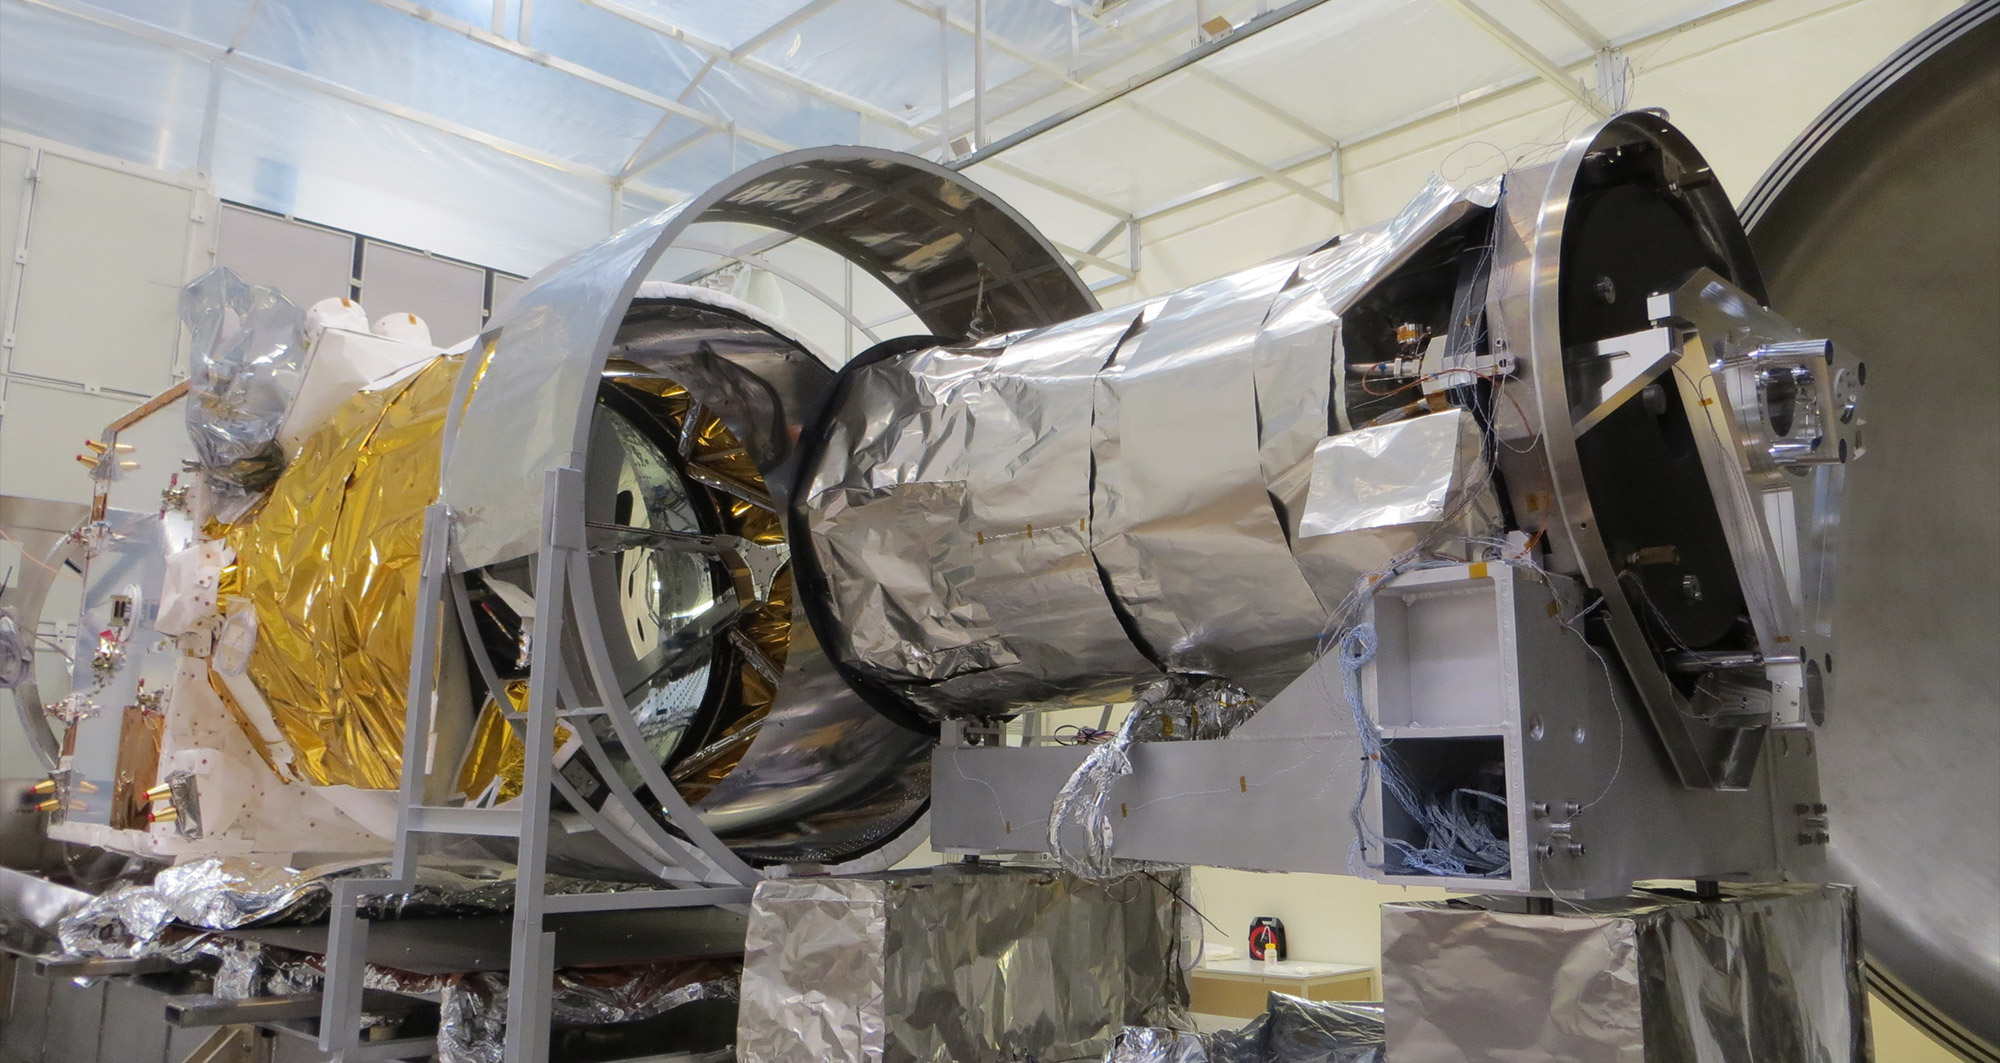 Le satellite ADM-Aeolus, au Centre spatial de Liège, prêt à entrer dans la cuve Focal5, à l'intérieur de laquelle il subira ses essais de vide thermique. © ESA